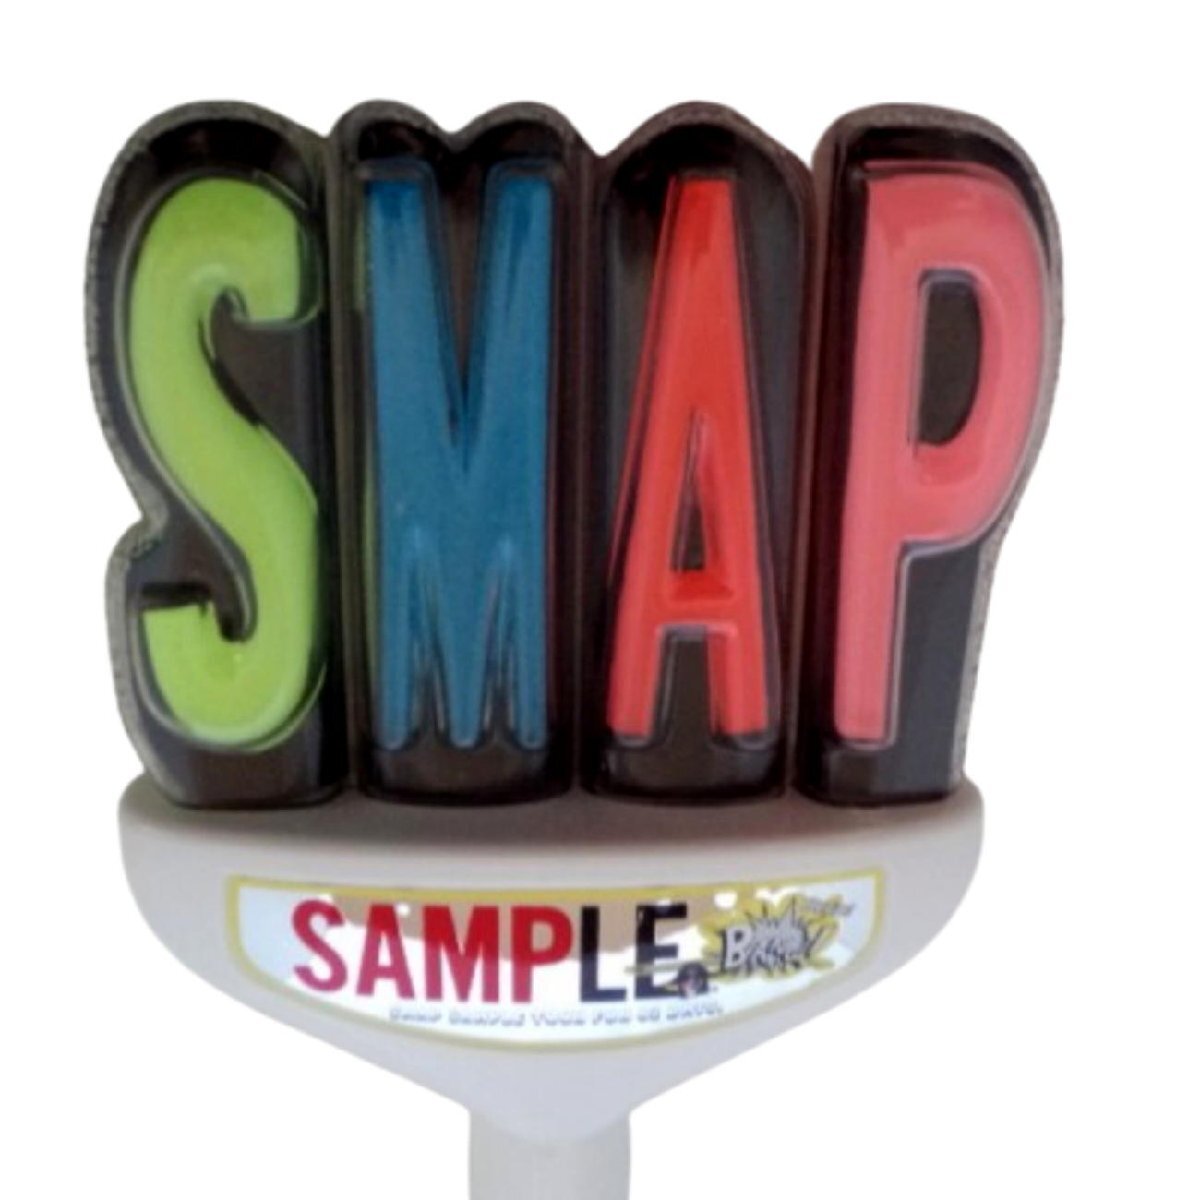 ★起動のみ確認・SMAP★「SMAPとイク? SMAP SAMPLE TOUR FOR 62 DAYS.」★ペンライト、コンサートライト★M293_画像5